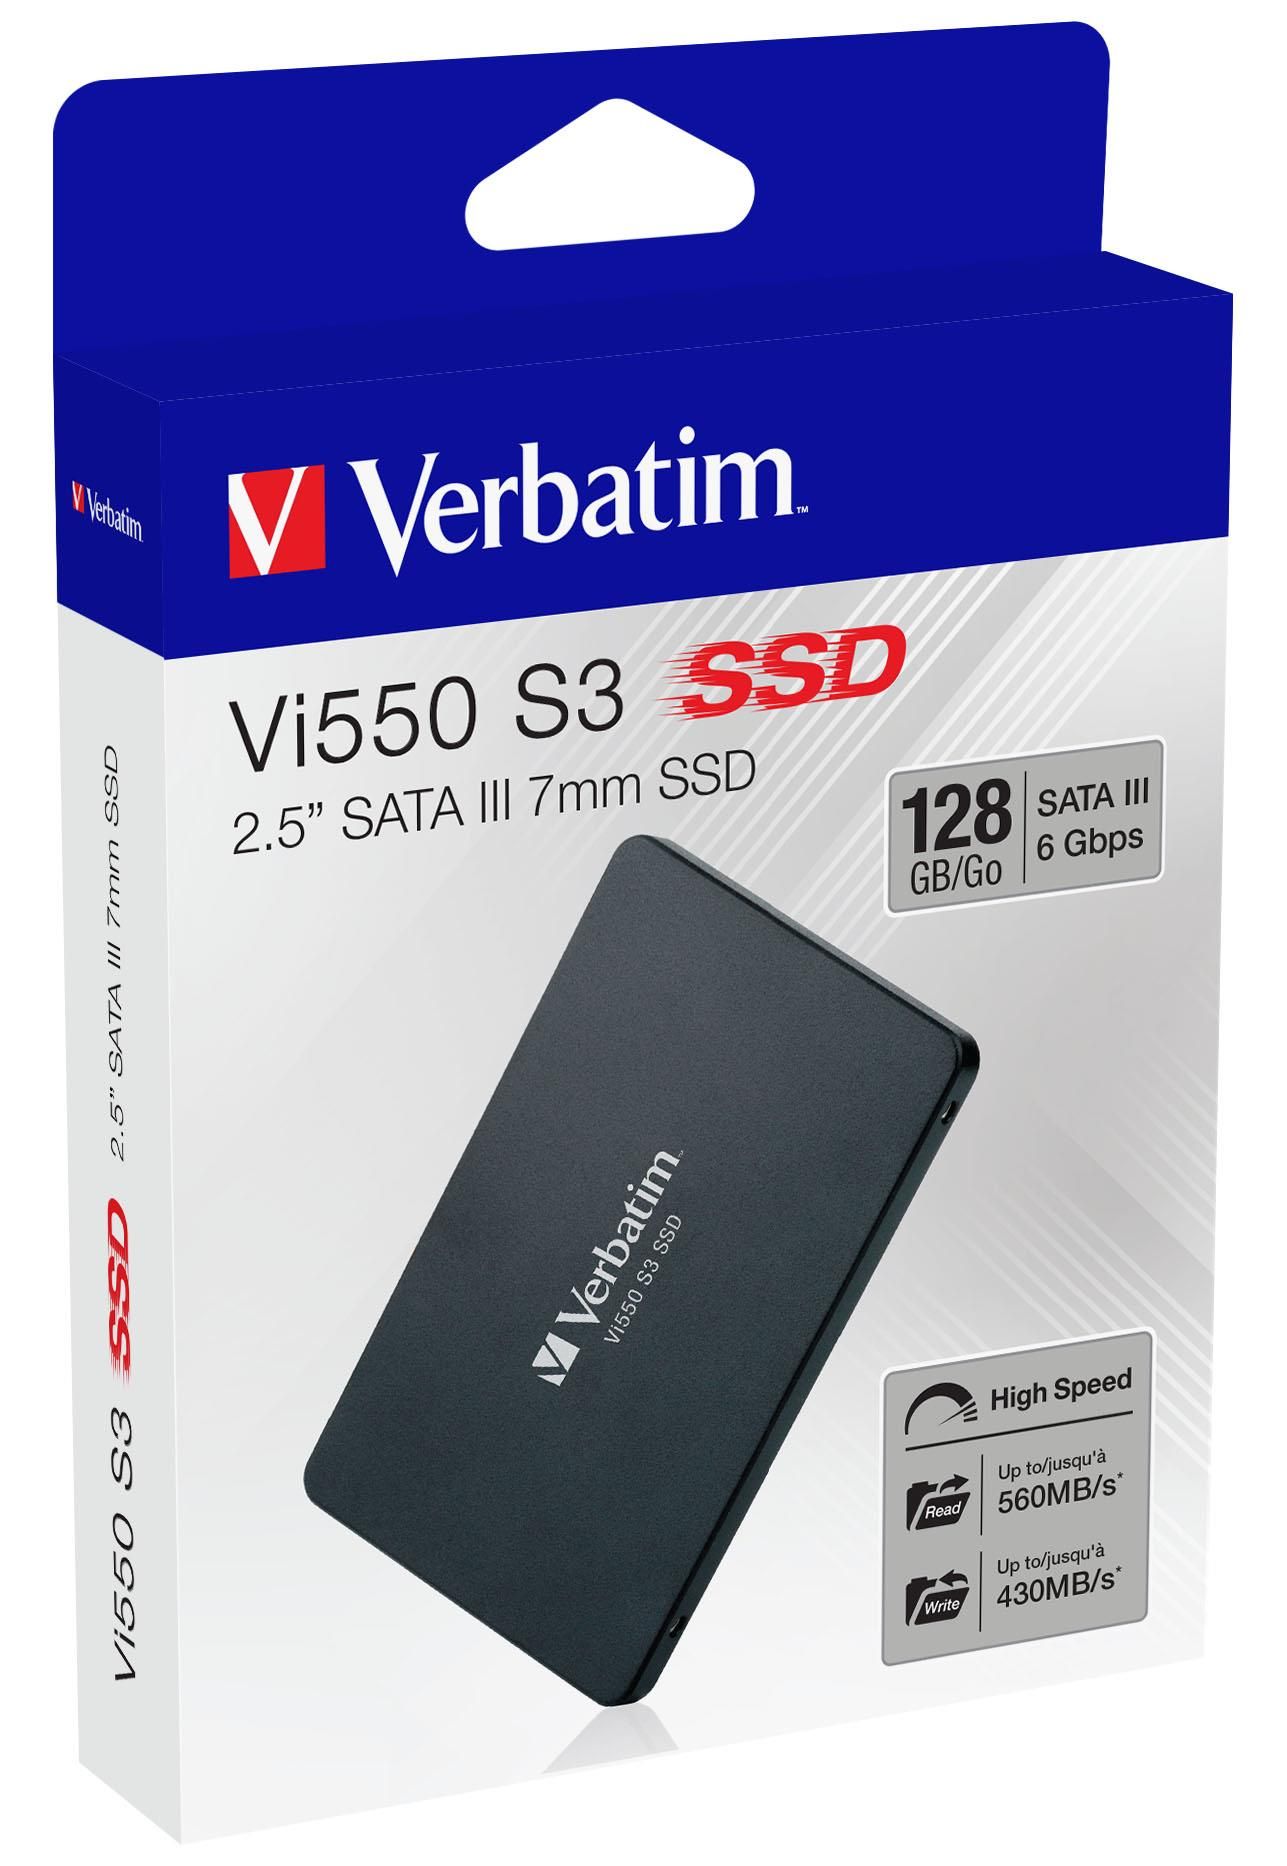 Vi550 S3 2.5 SSD